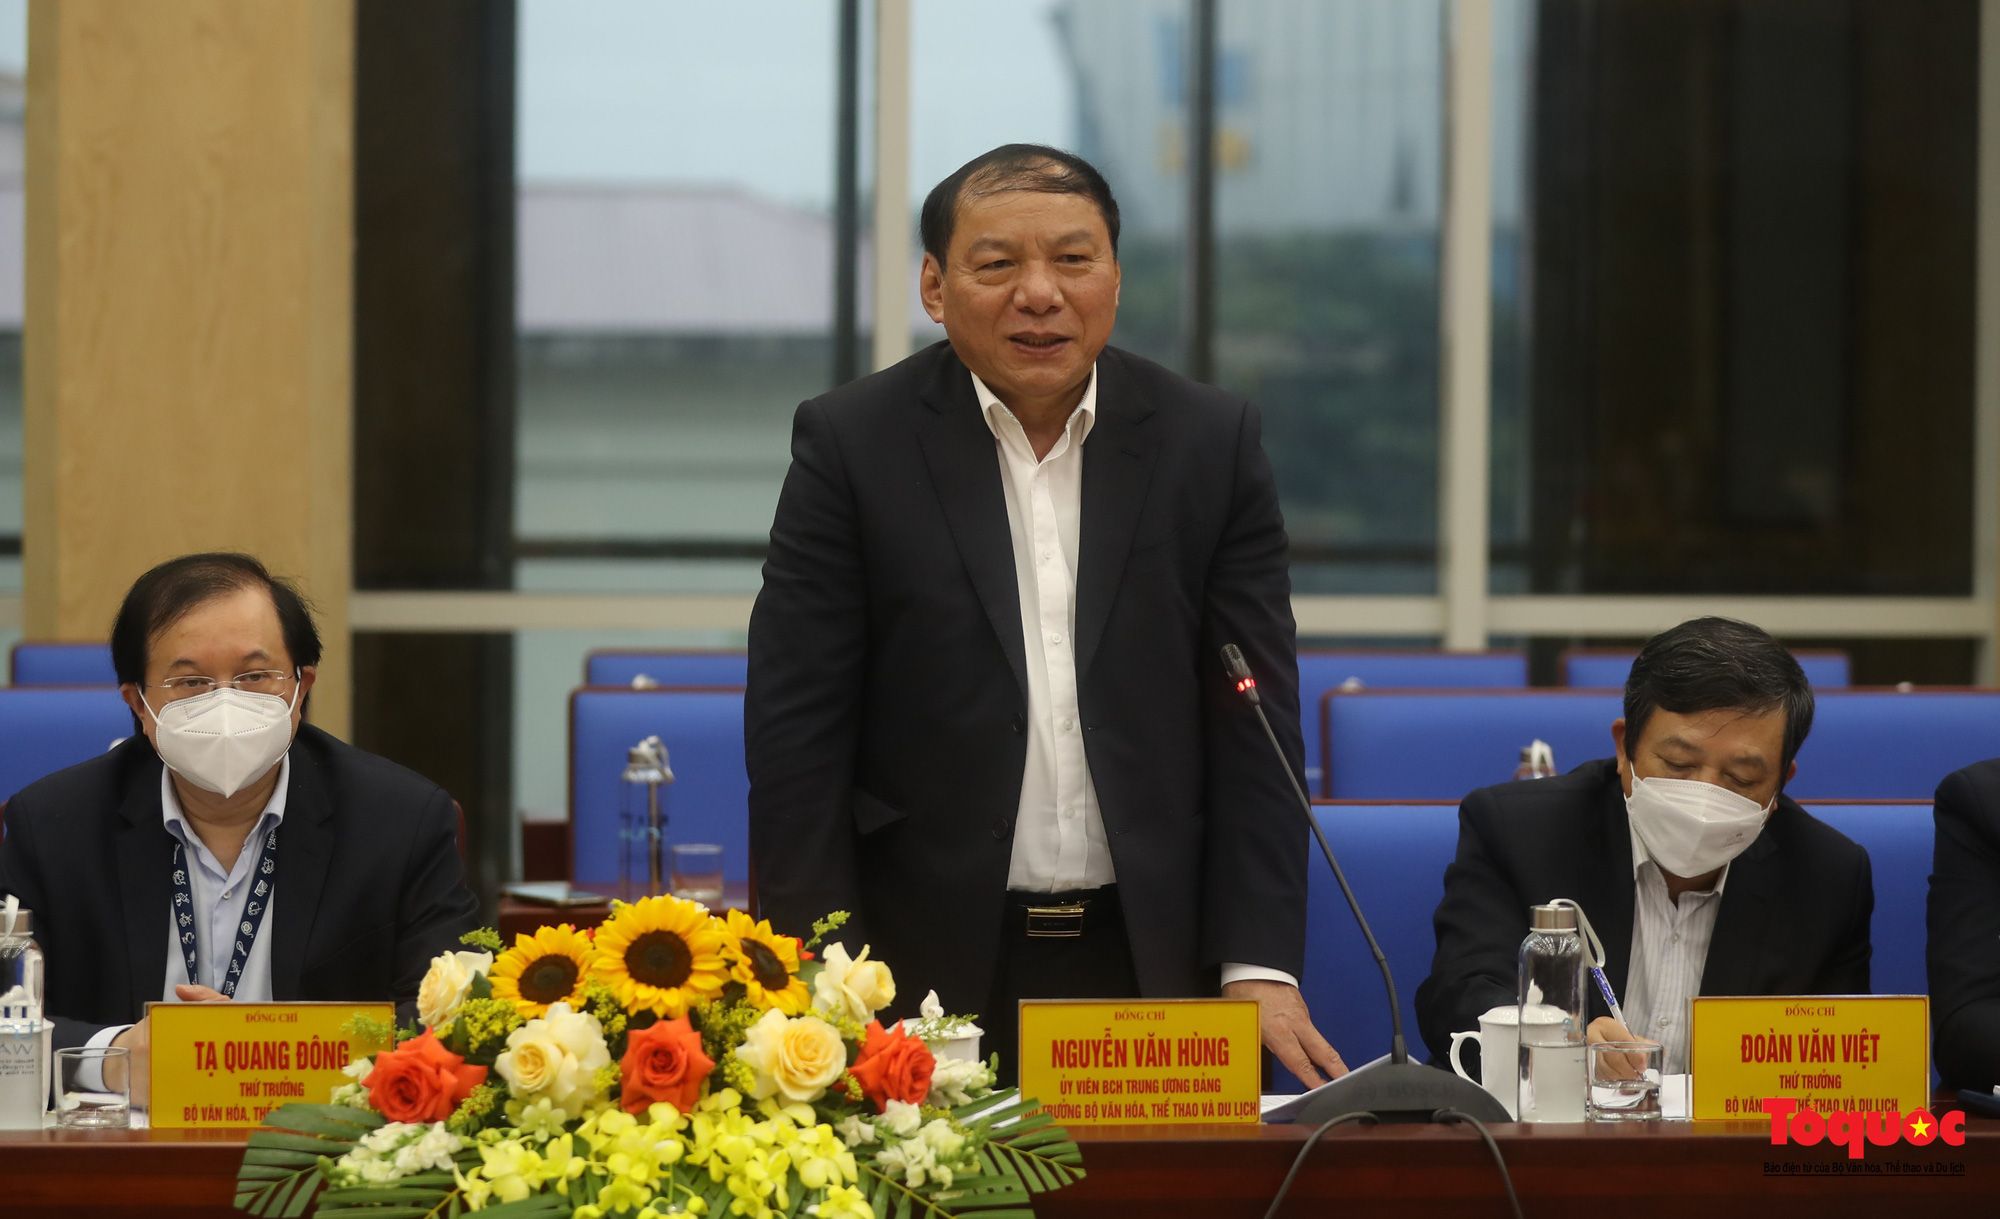 Bộ trưởng Nguyễn Văn Hùng: &quot;Phải đặt được tên gọi, viết nên câu chuyện về thương hiệu du lịch tỉnh Nghệ An&quot;  - Ảnh 7.